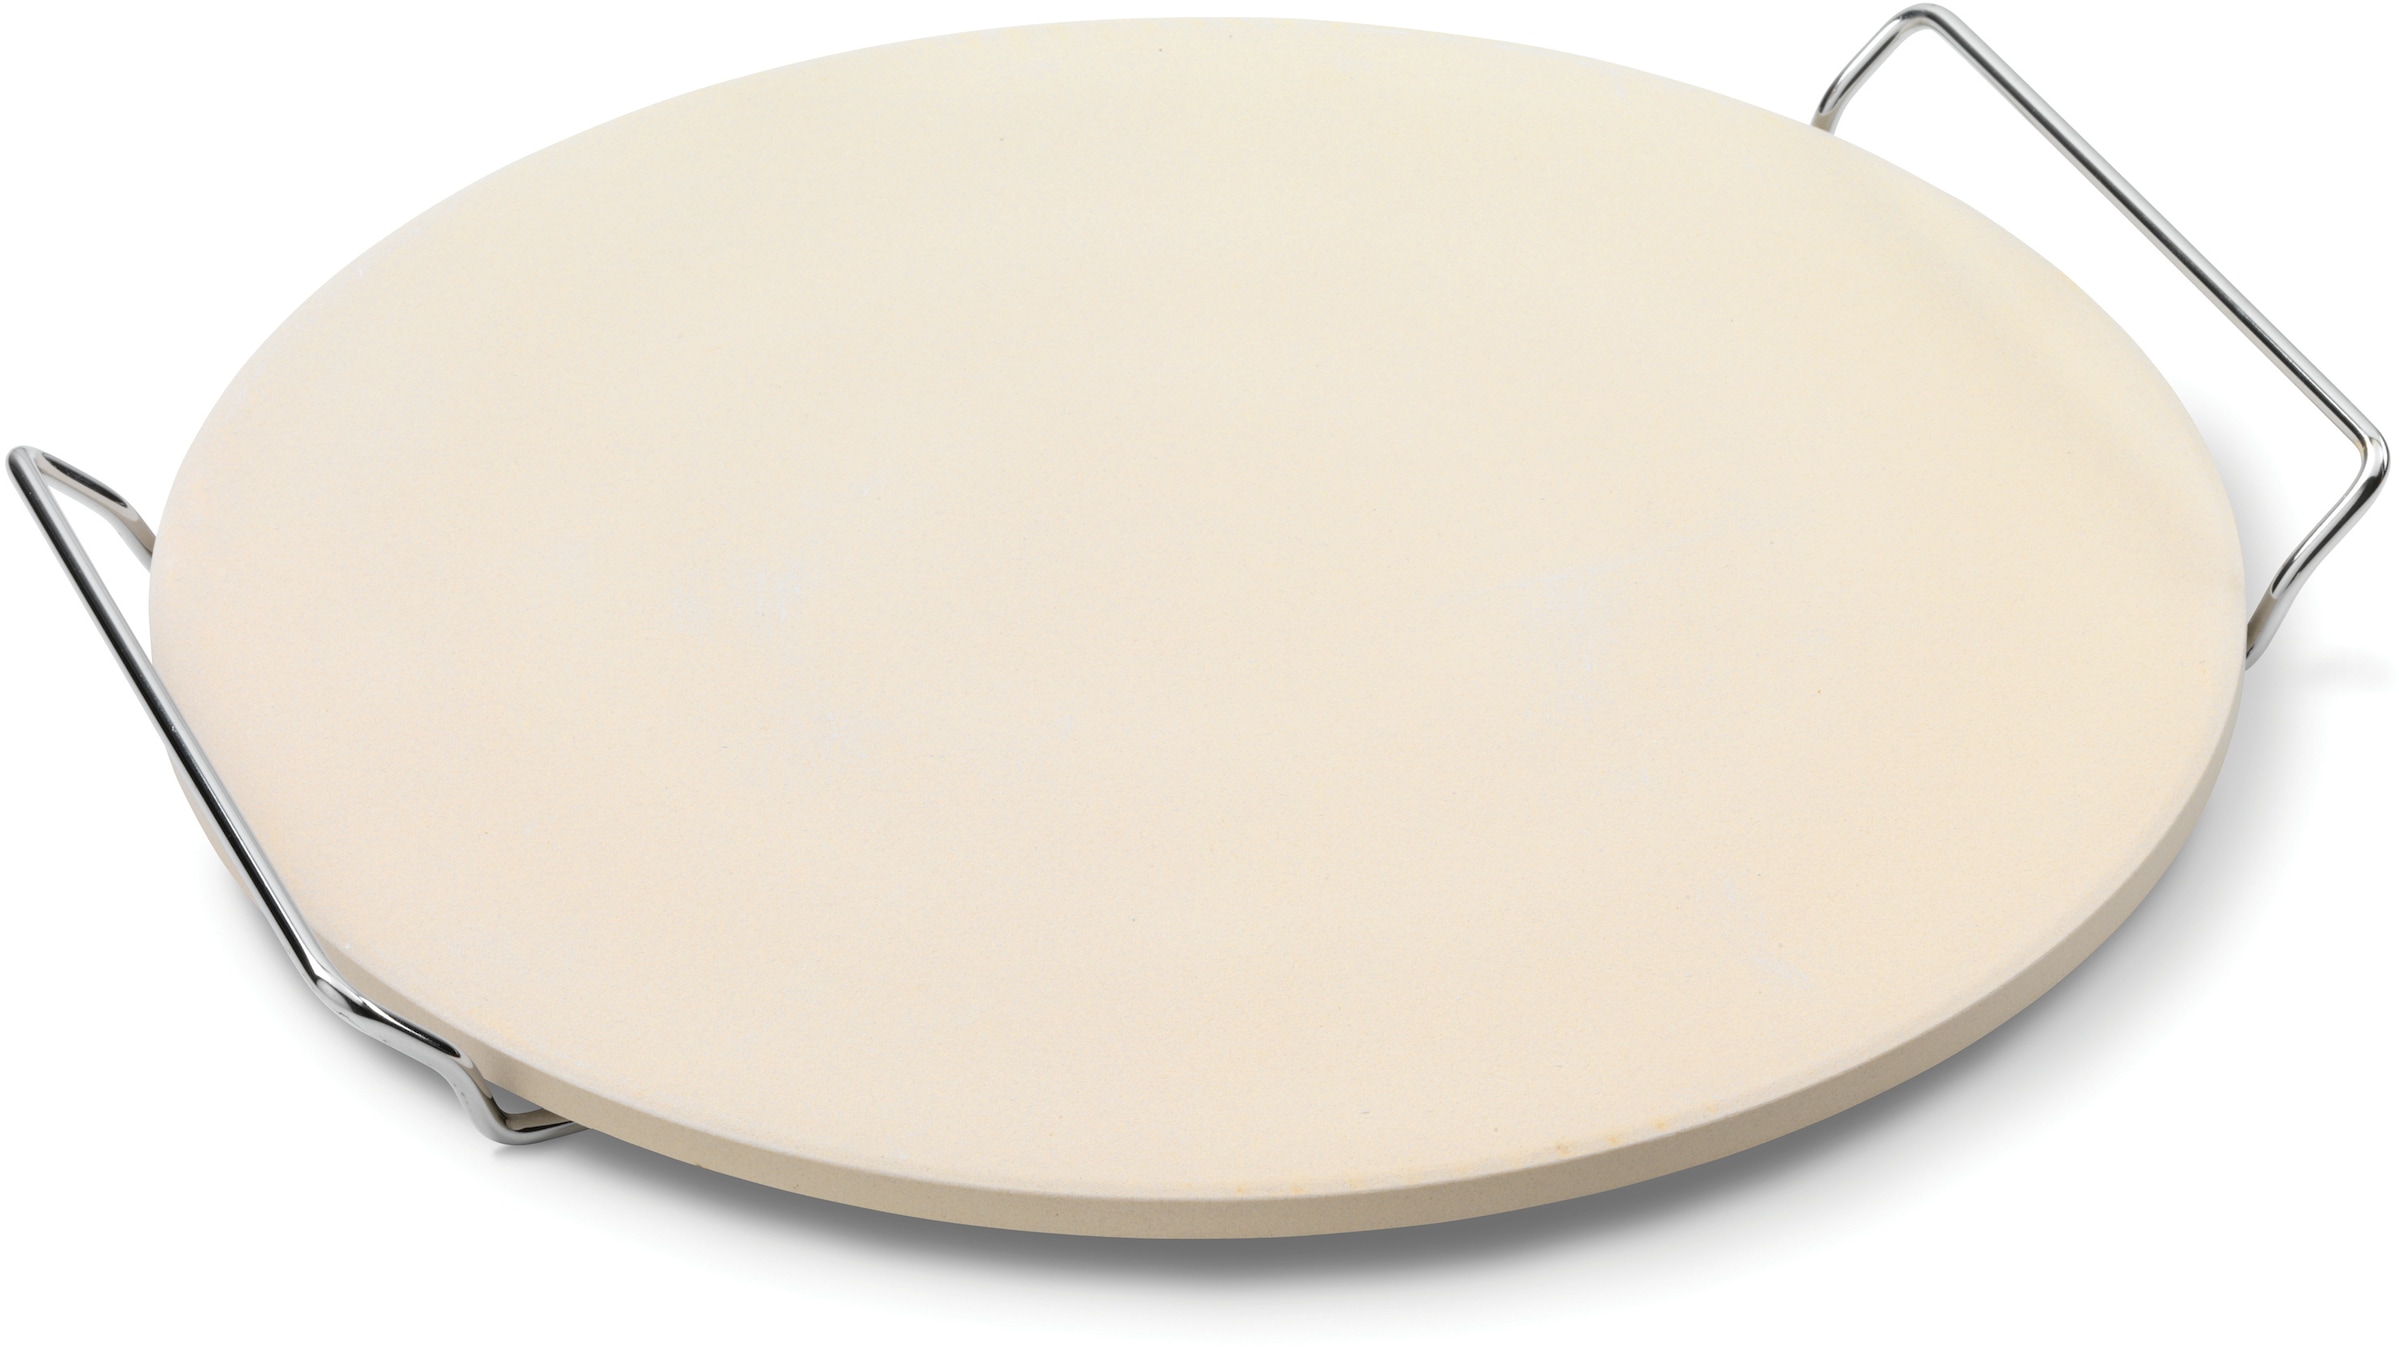 Pizzastein, Keramik, Ø 35 cm, auch als Servierplatte geeignet